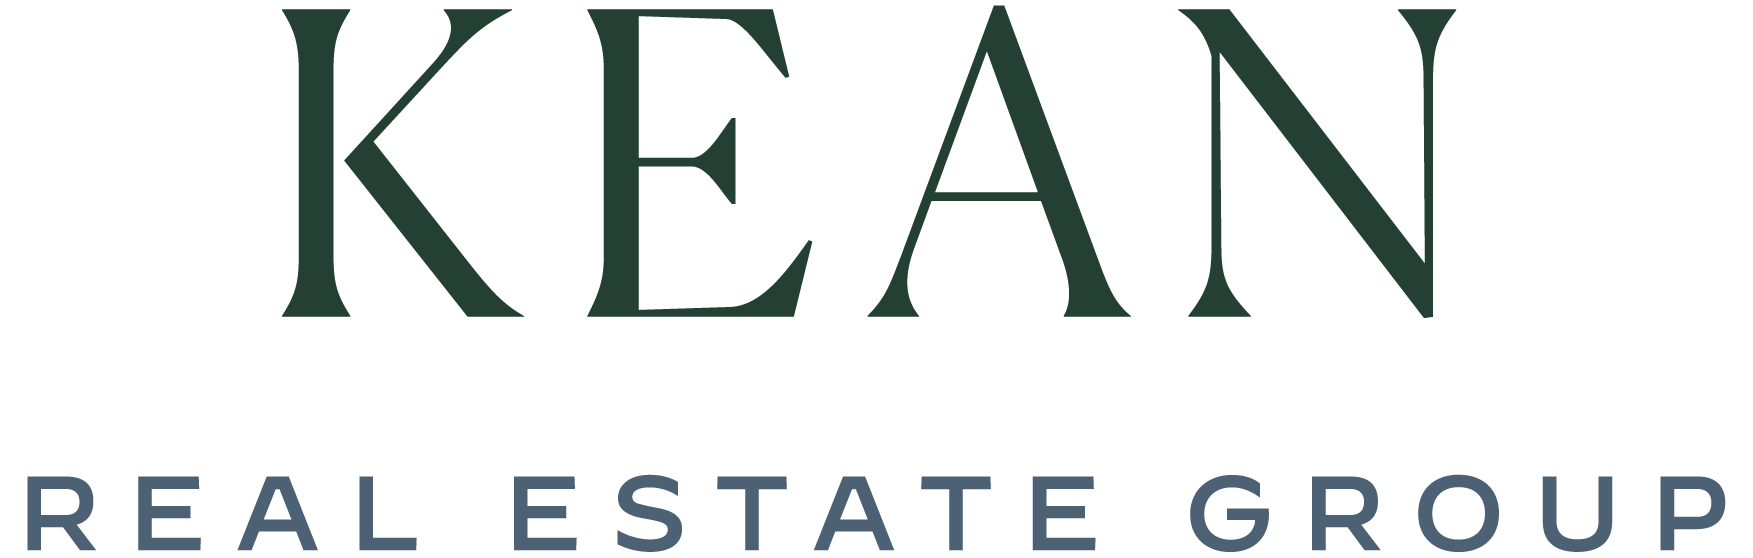 Kean real estate group logo.